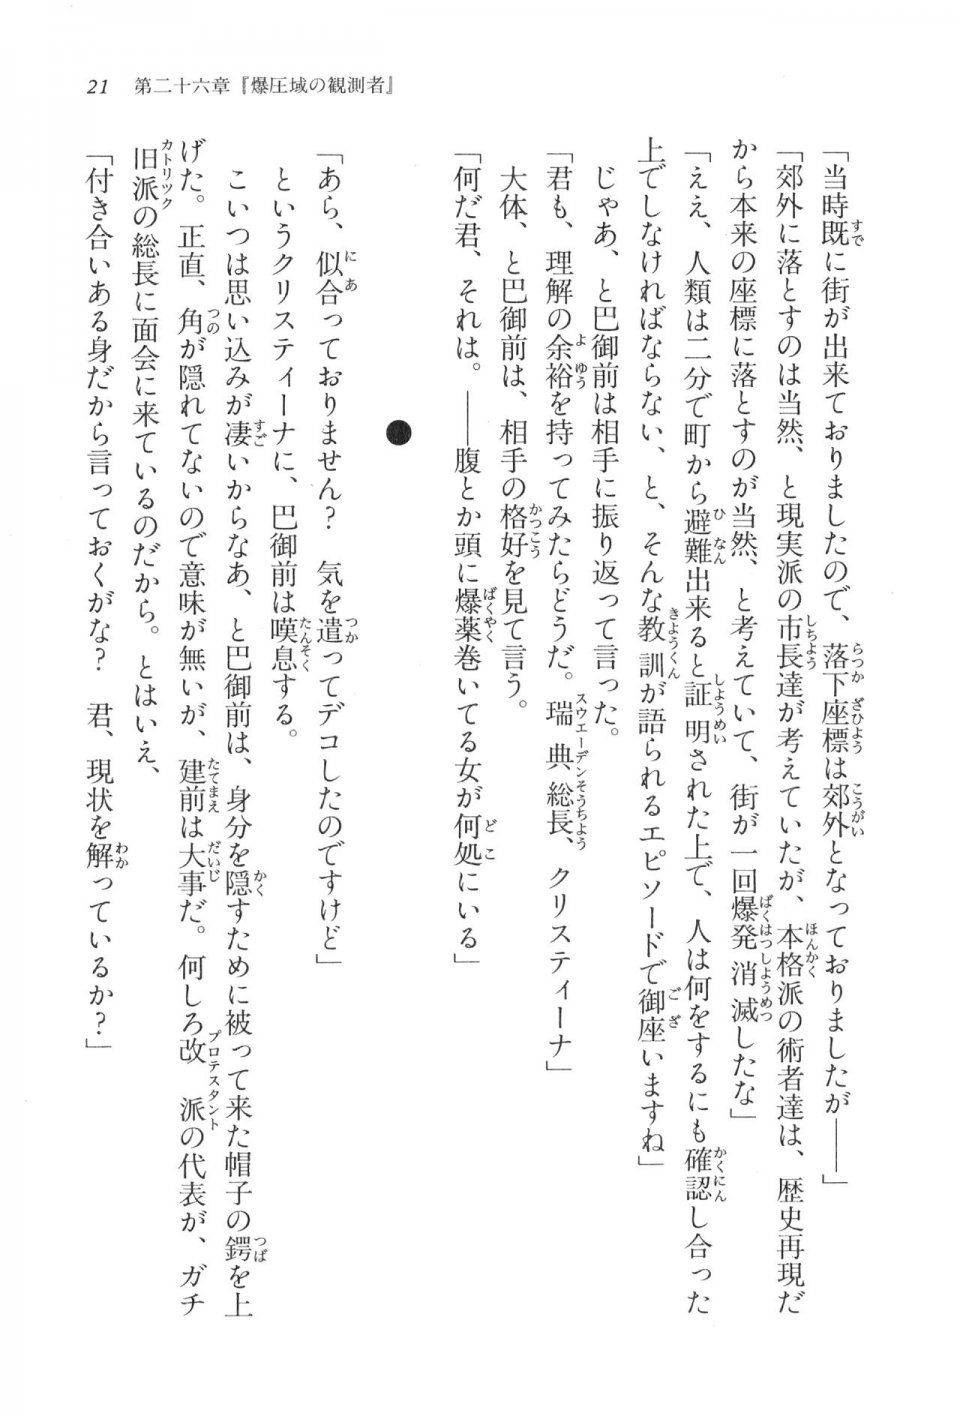 Kyoukai Senjou no Horizon LN Vol 17(7B) - Photo #21